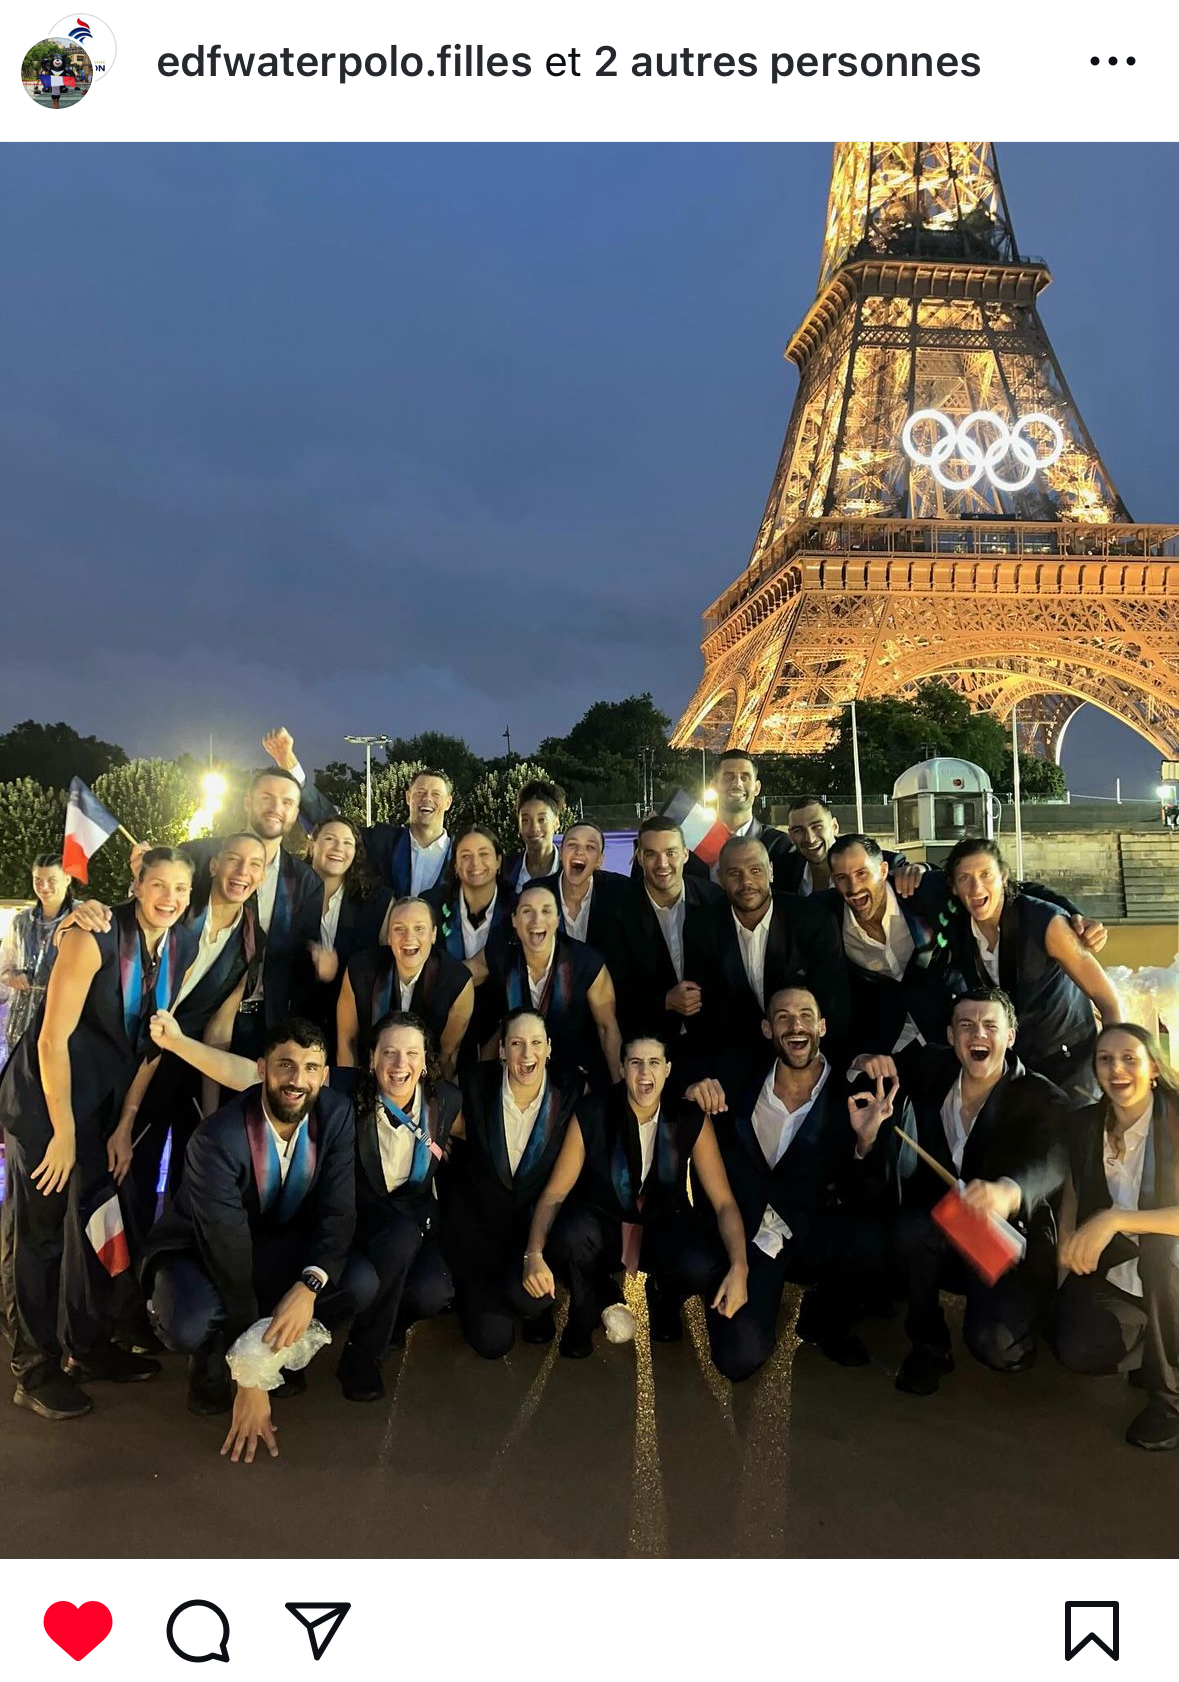 Les équipes de water-polo ne font qu'un devant la Tour Eiffel